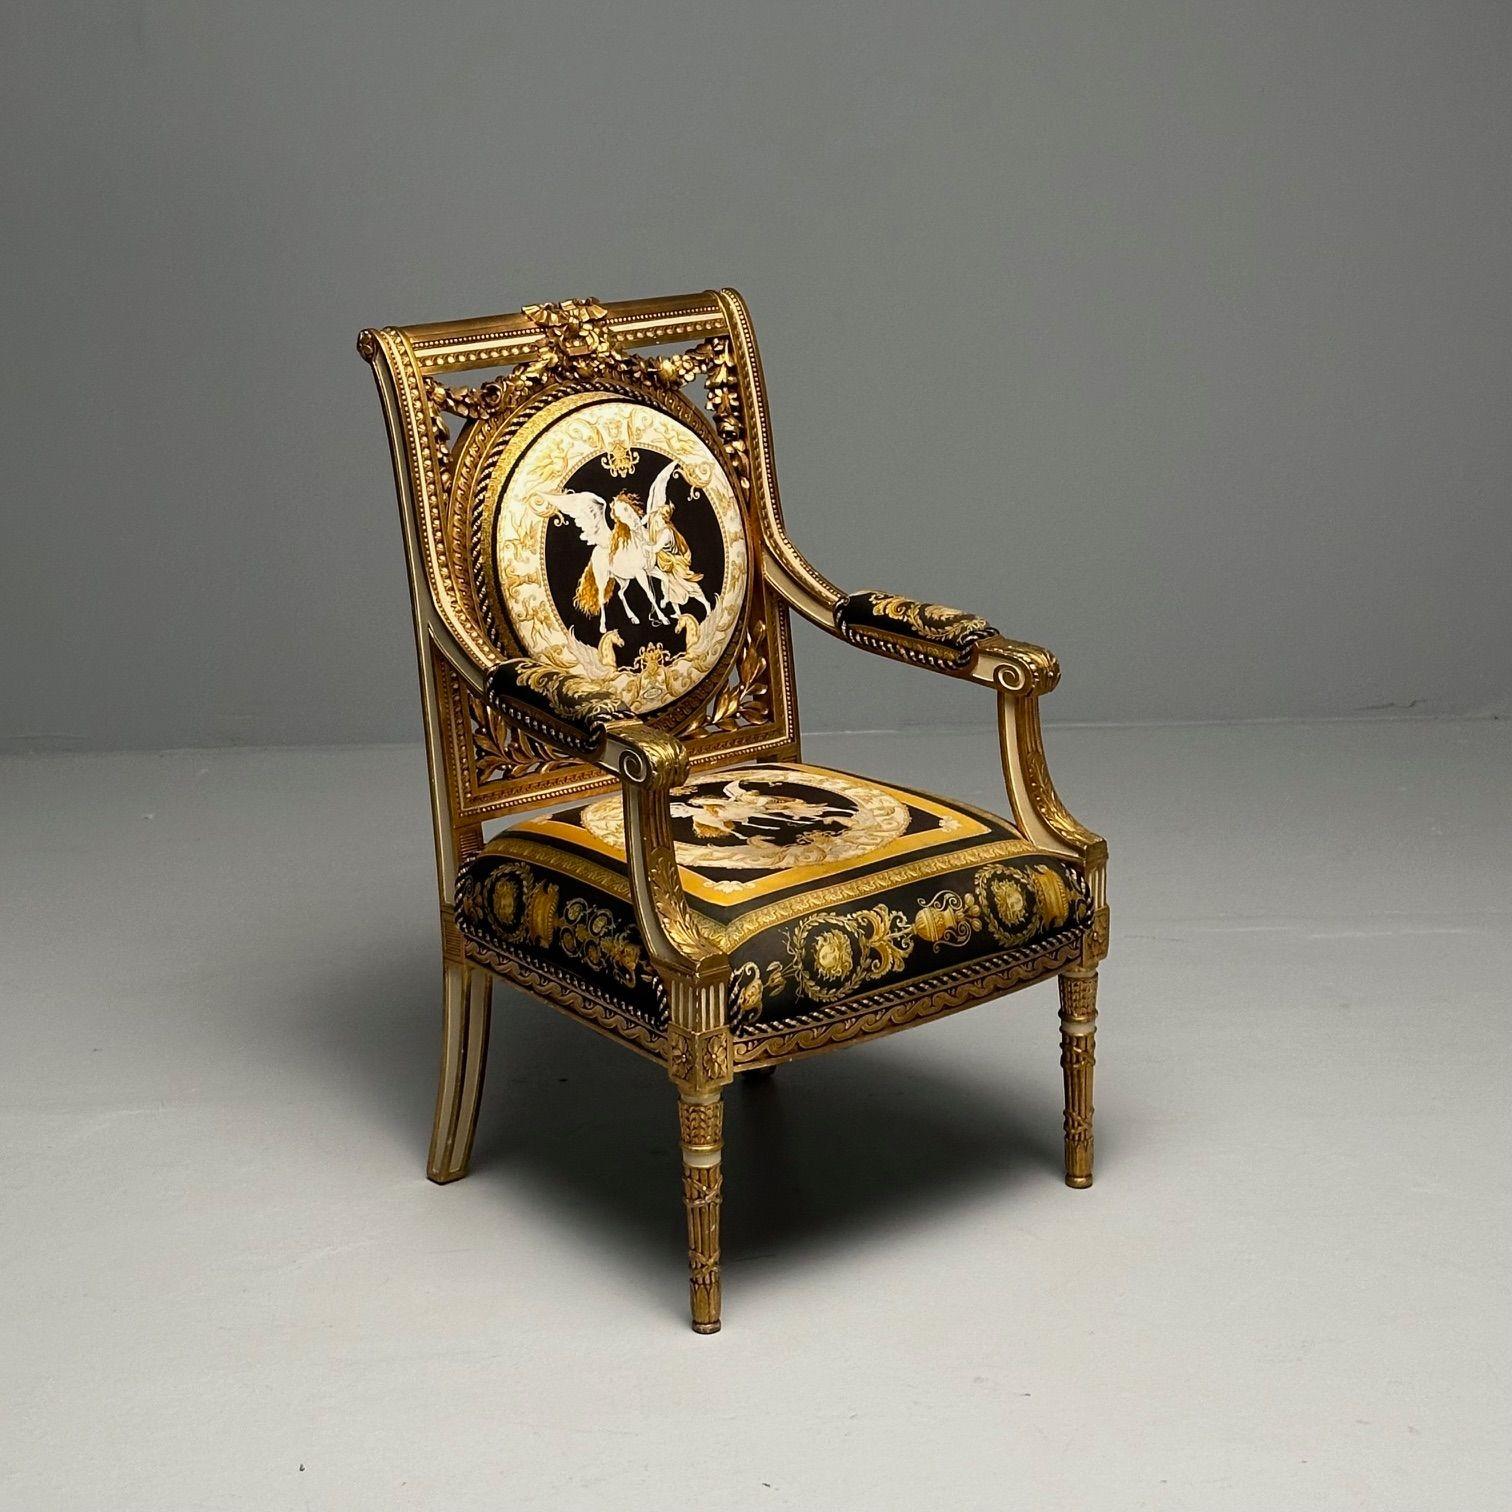 Louis XVI, Französischer Sessel, Versace-Stoff, Giltwood, Frankreich, 1960er Jahre

Ein Sessel im Stil Louis XVI, entworfen und hergestellt in Frankreich. Feinste Versace-Polsterung bedeckt dieses einmalige Kunstwerk. Aufwändige, handgeschnitzte